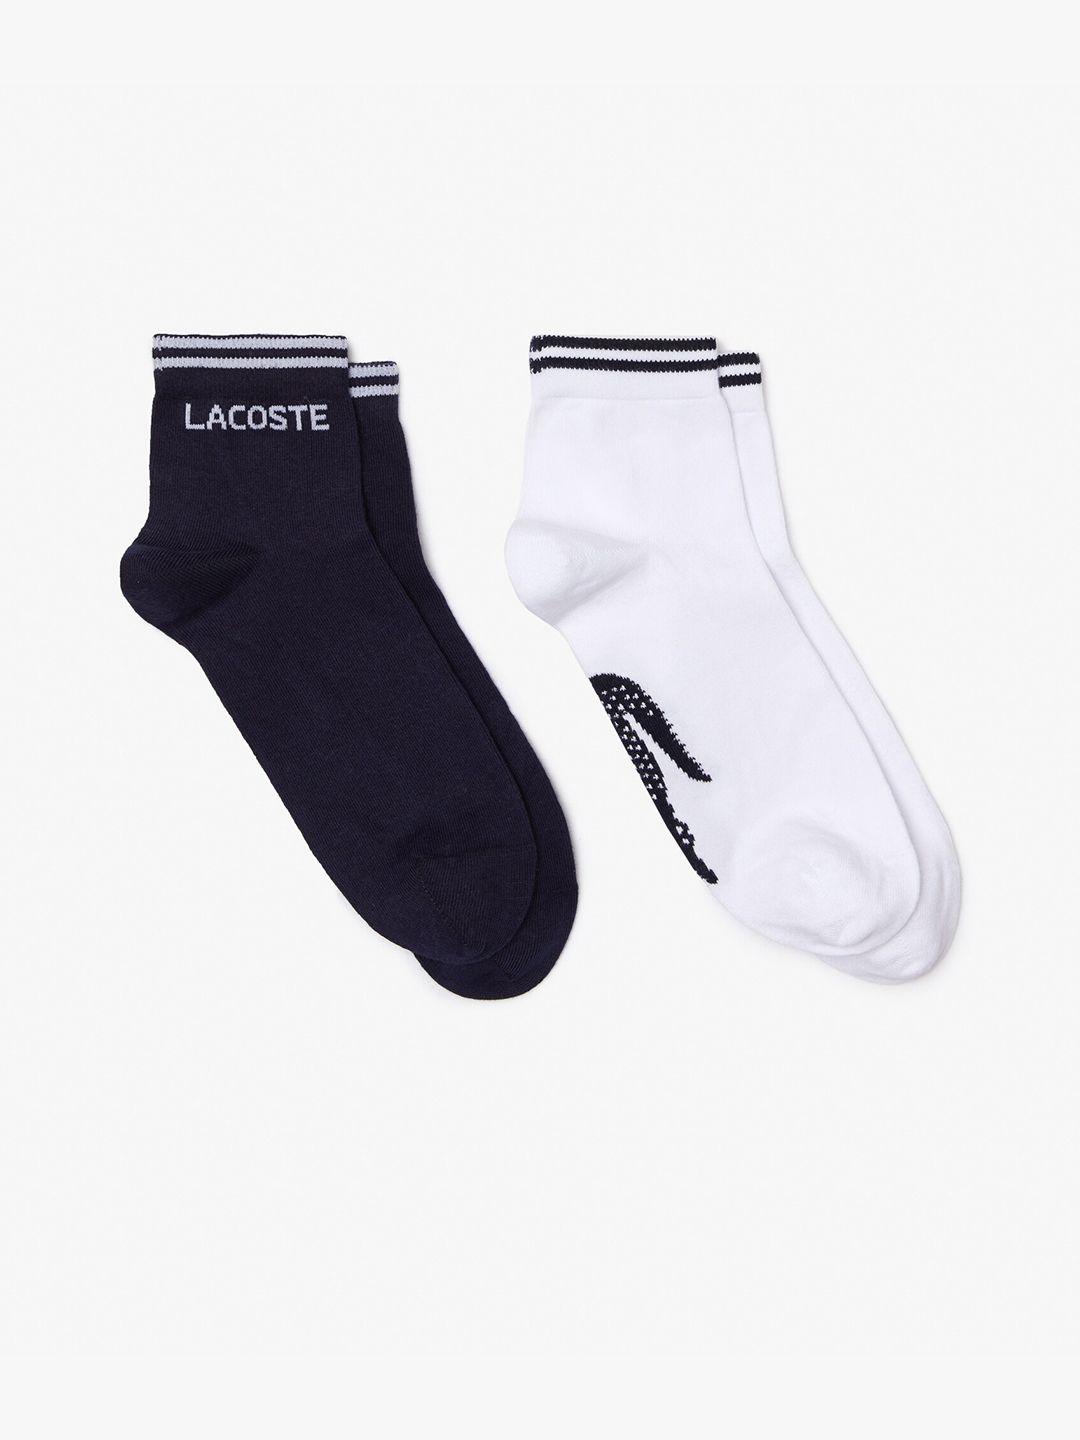 lacoste men pack of 2 calf-length sports socks